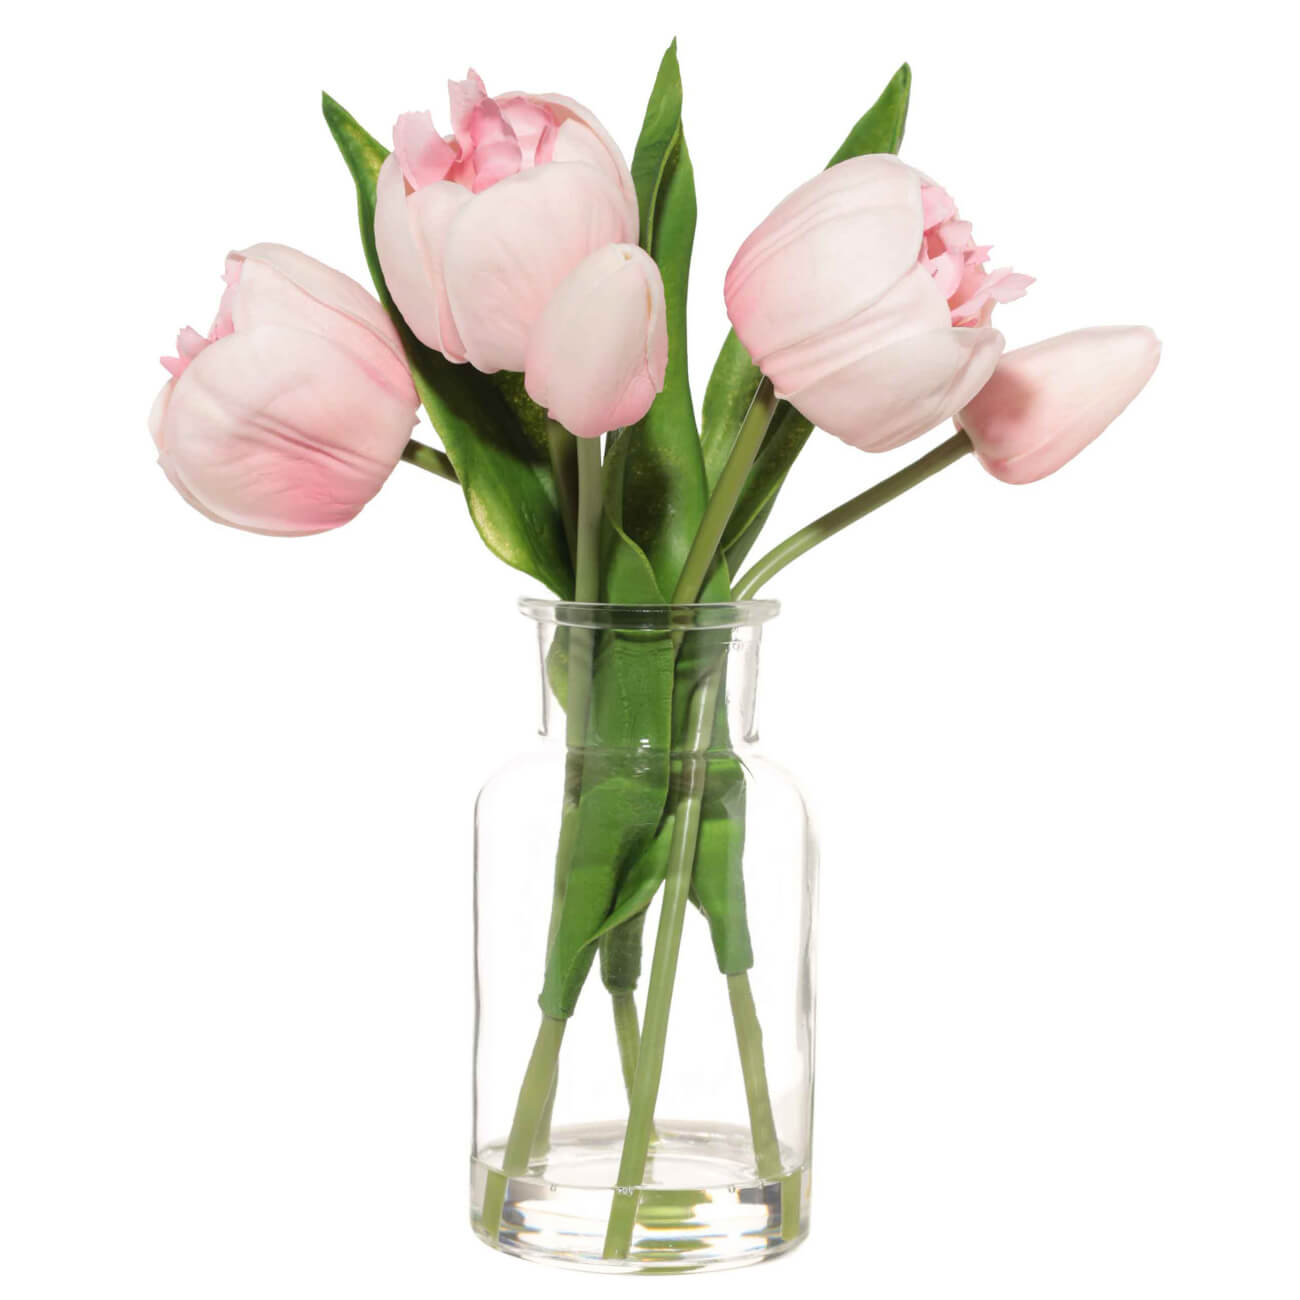 Букет искусственный, 21 см, в вазе, полиуретан/стекло, Розовые тюльпаны, Tulip garden букет тюльпаны 25 шт